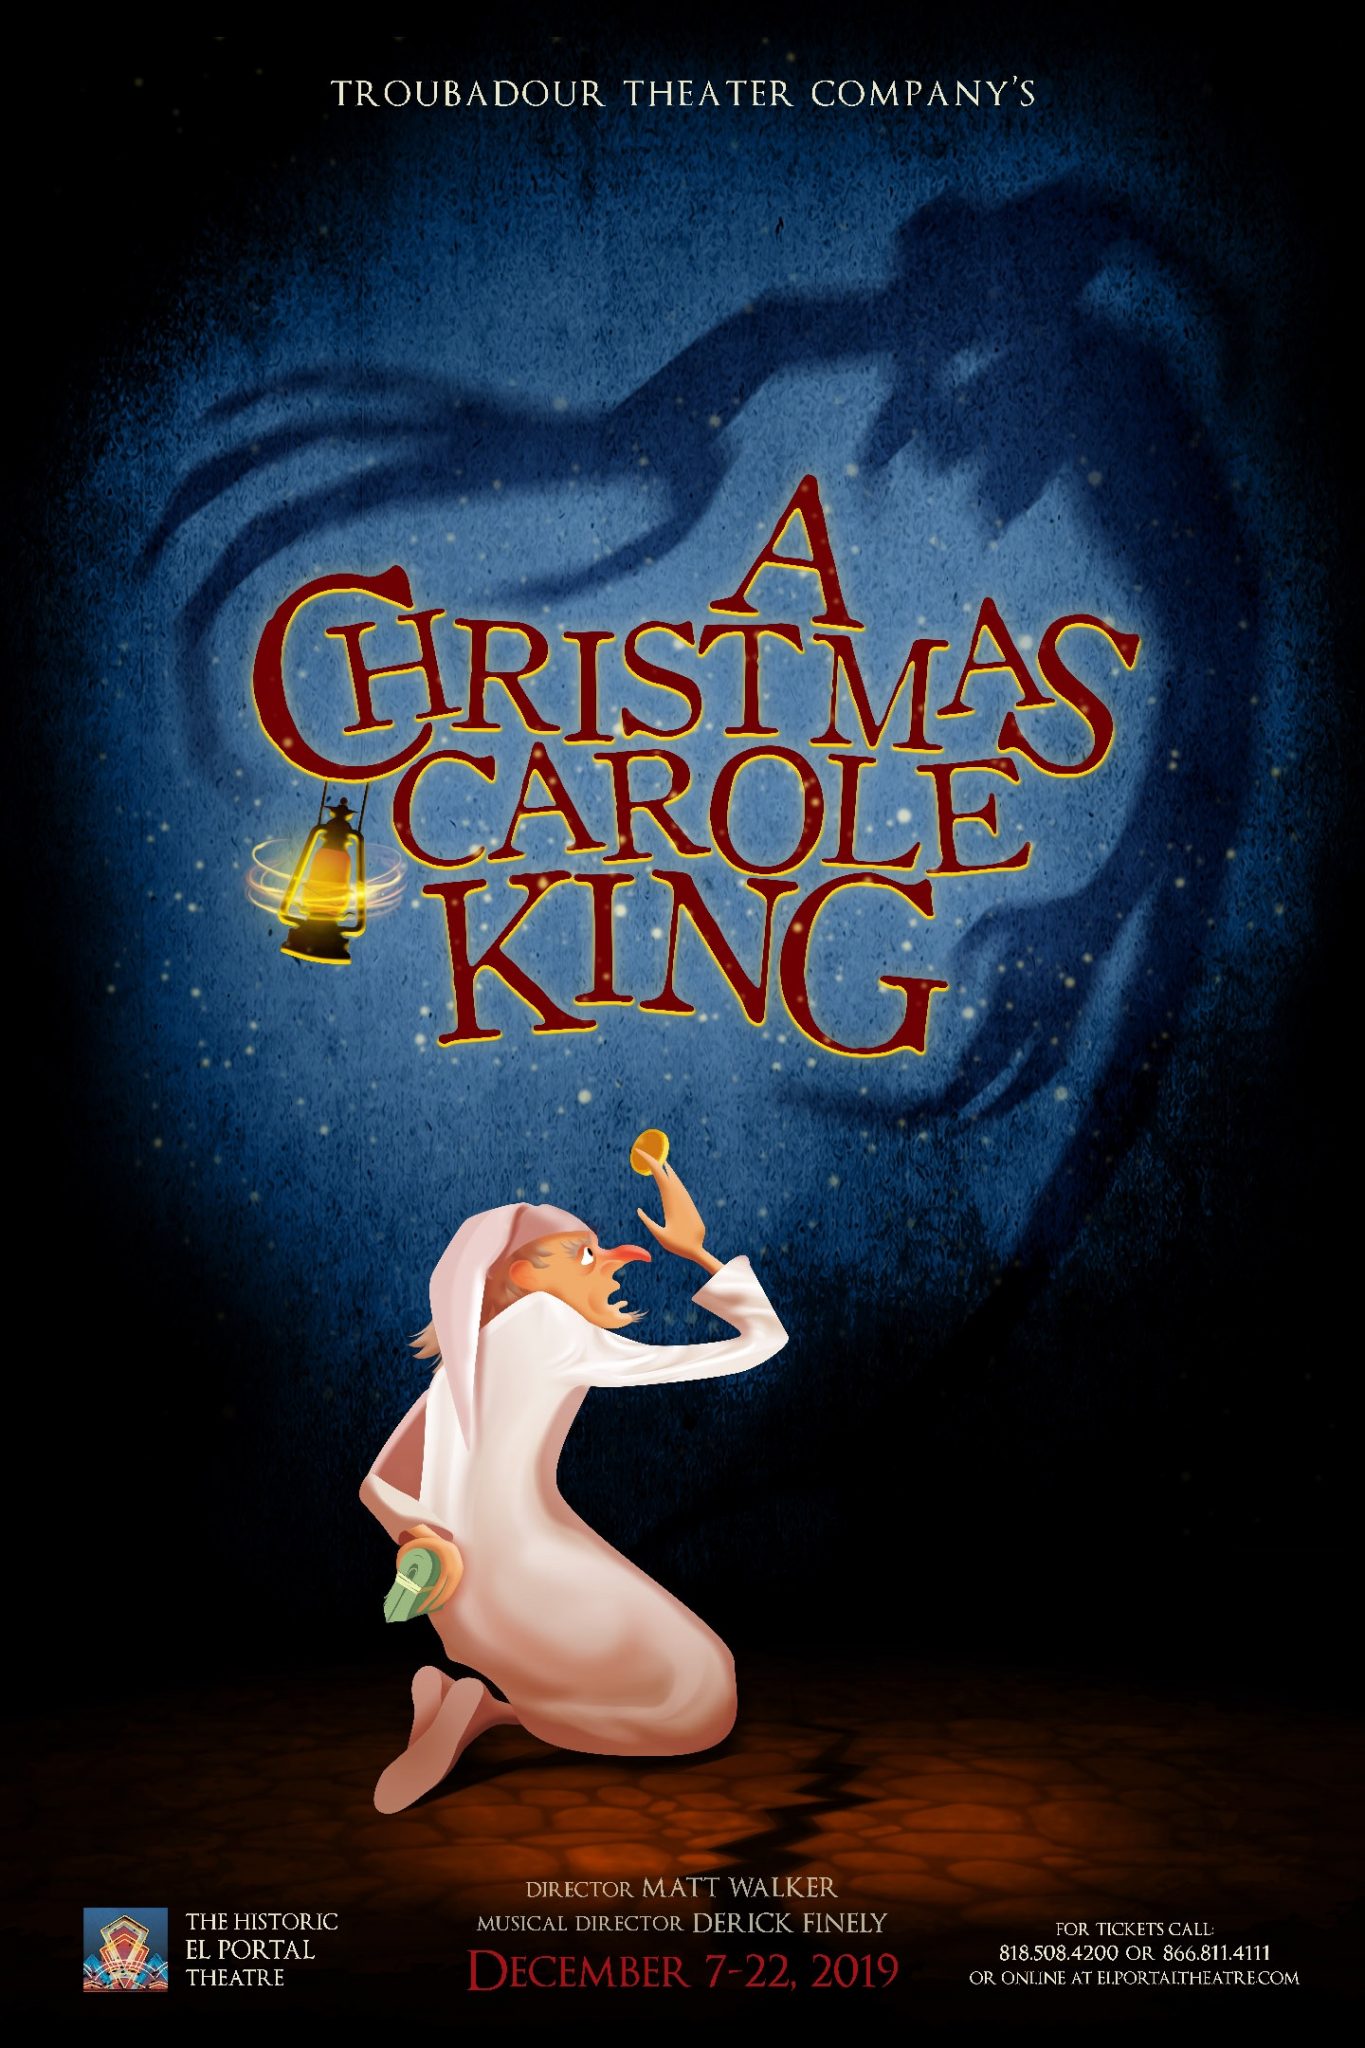 A Christmas Carole King